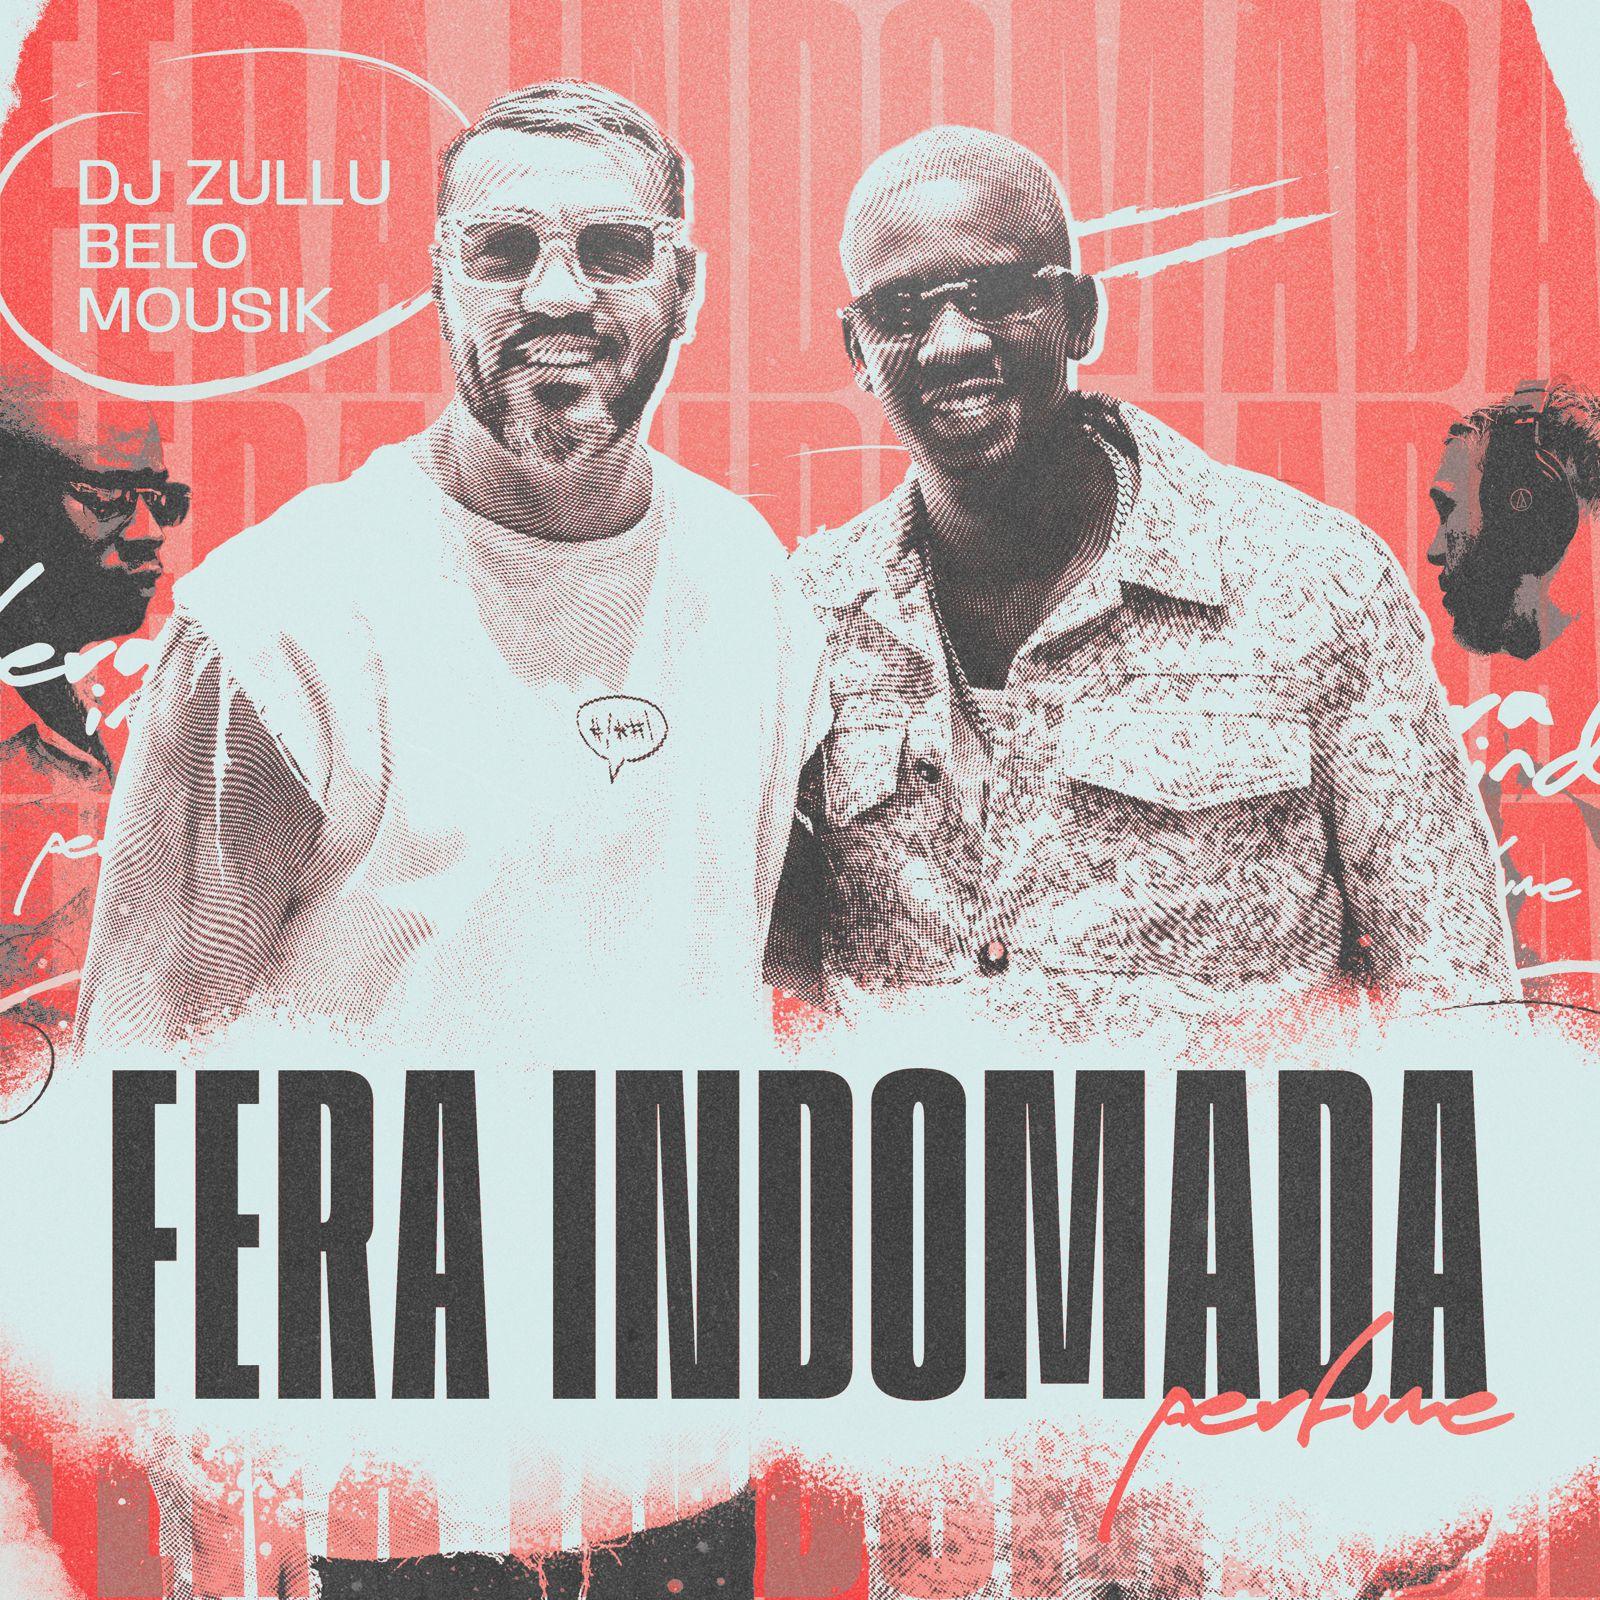 DJ Zullu e Belo conquistam o topo das rádios brasileiras com “Fera Indomada (Perfume)”